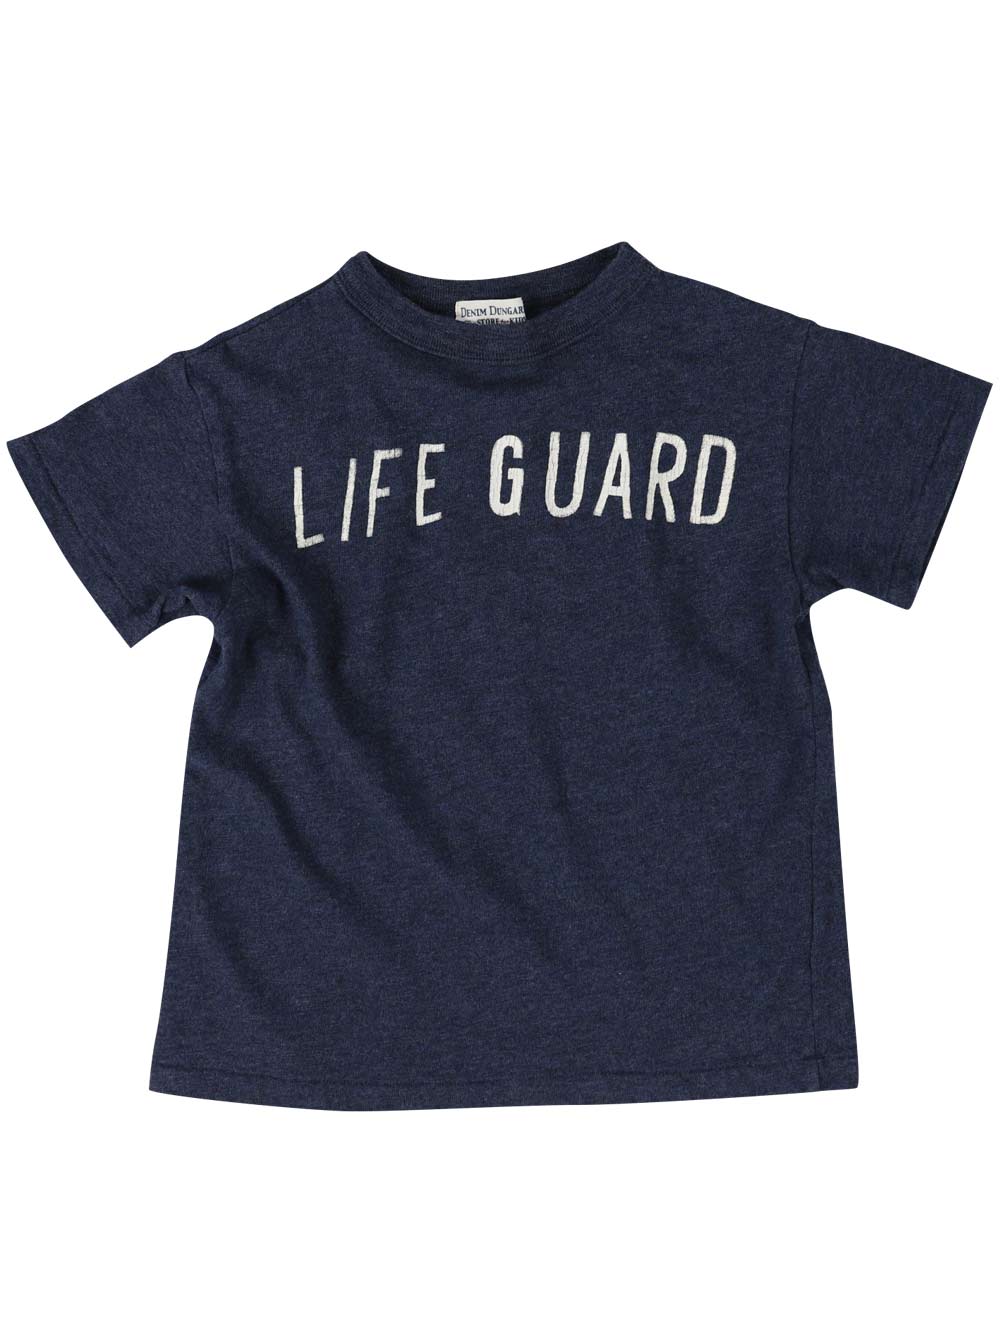 PREORDER: Life Guard T-Shirt